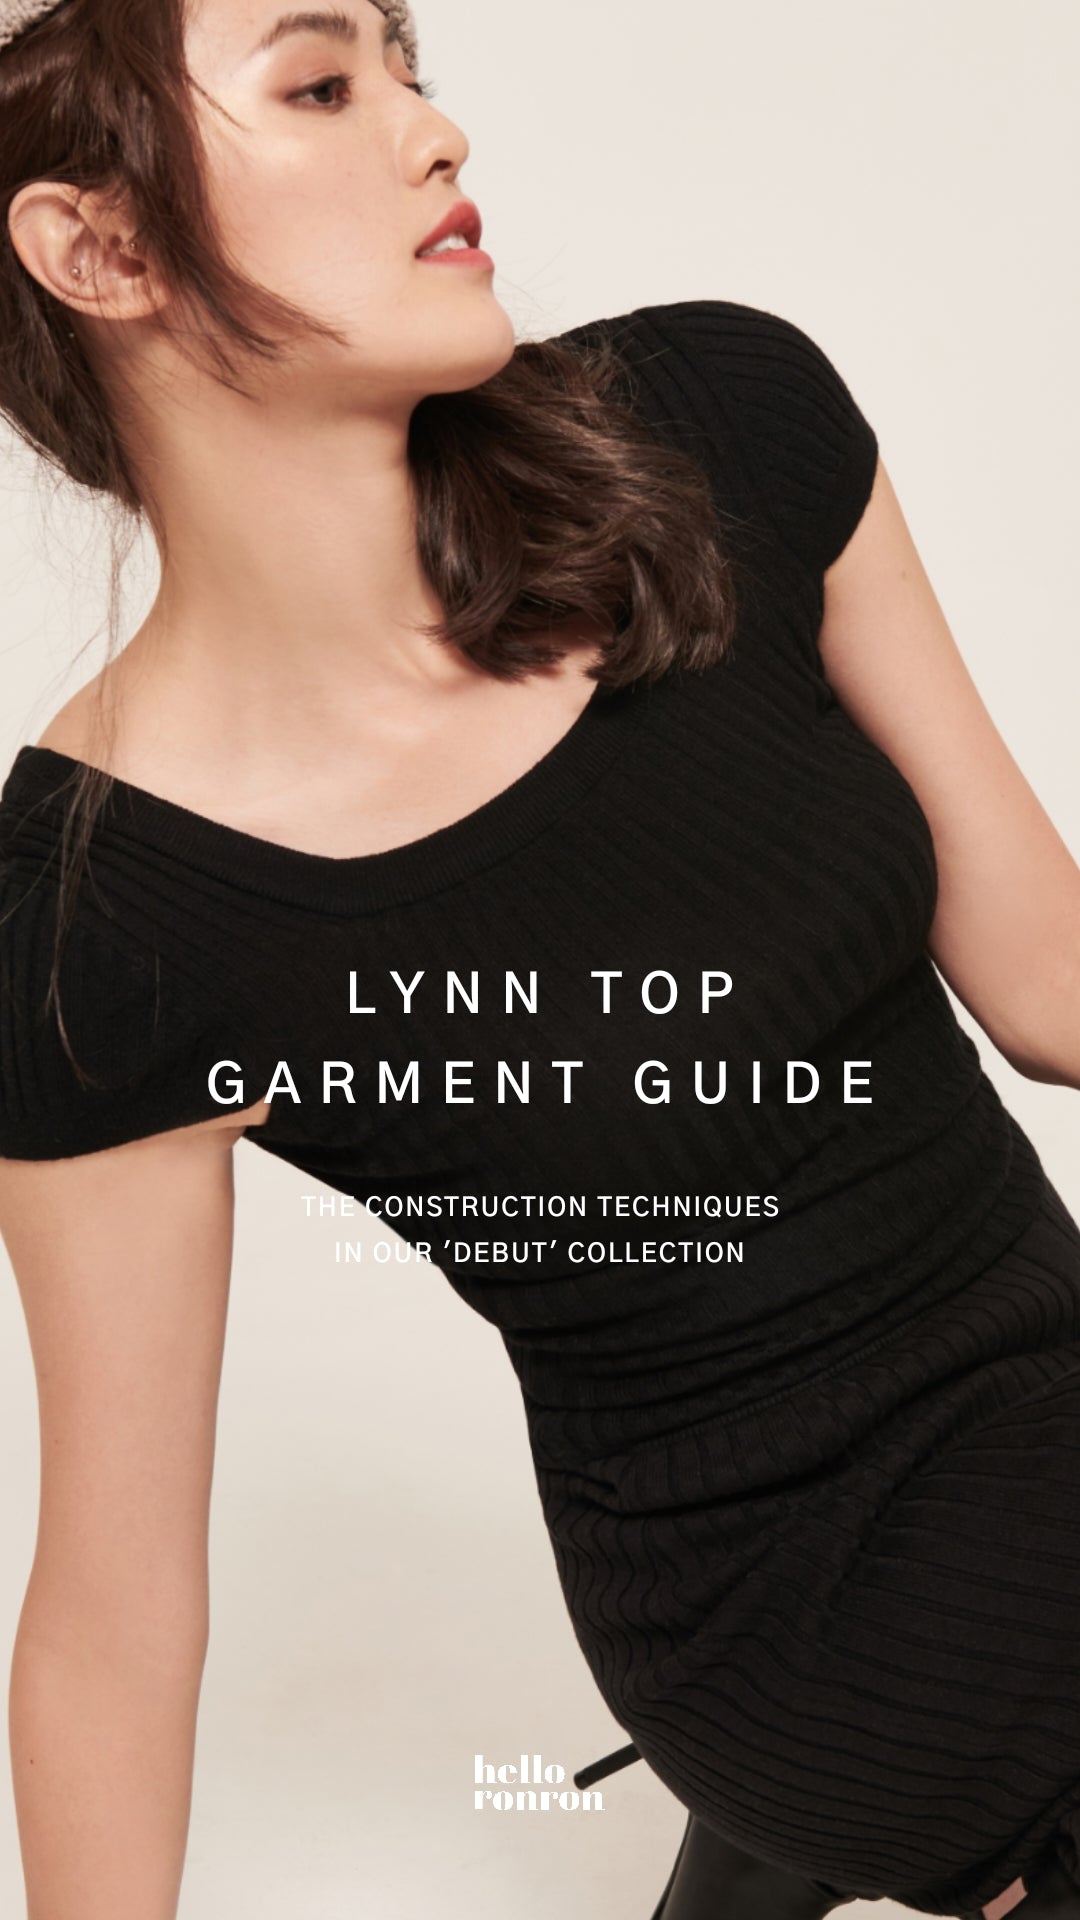 Lynn Top garment guide